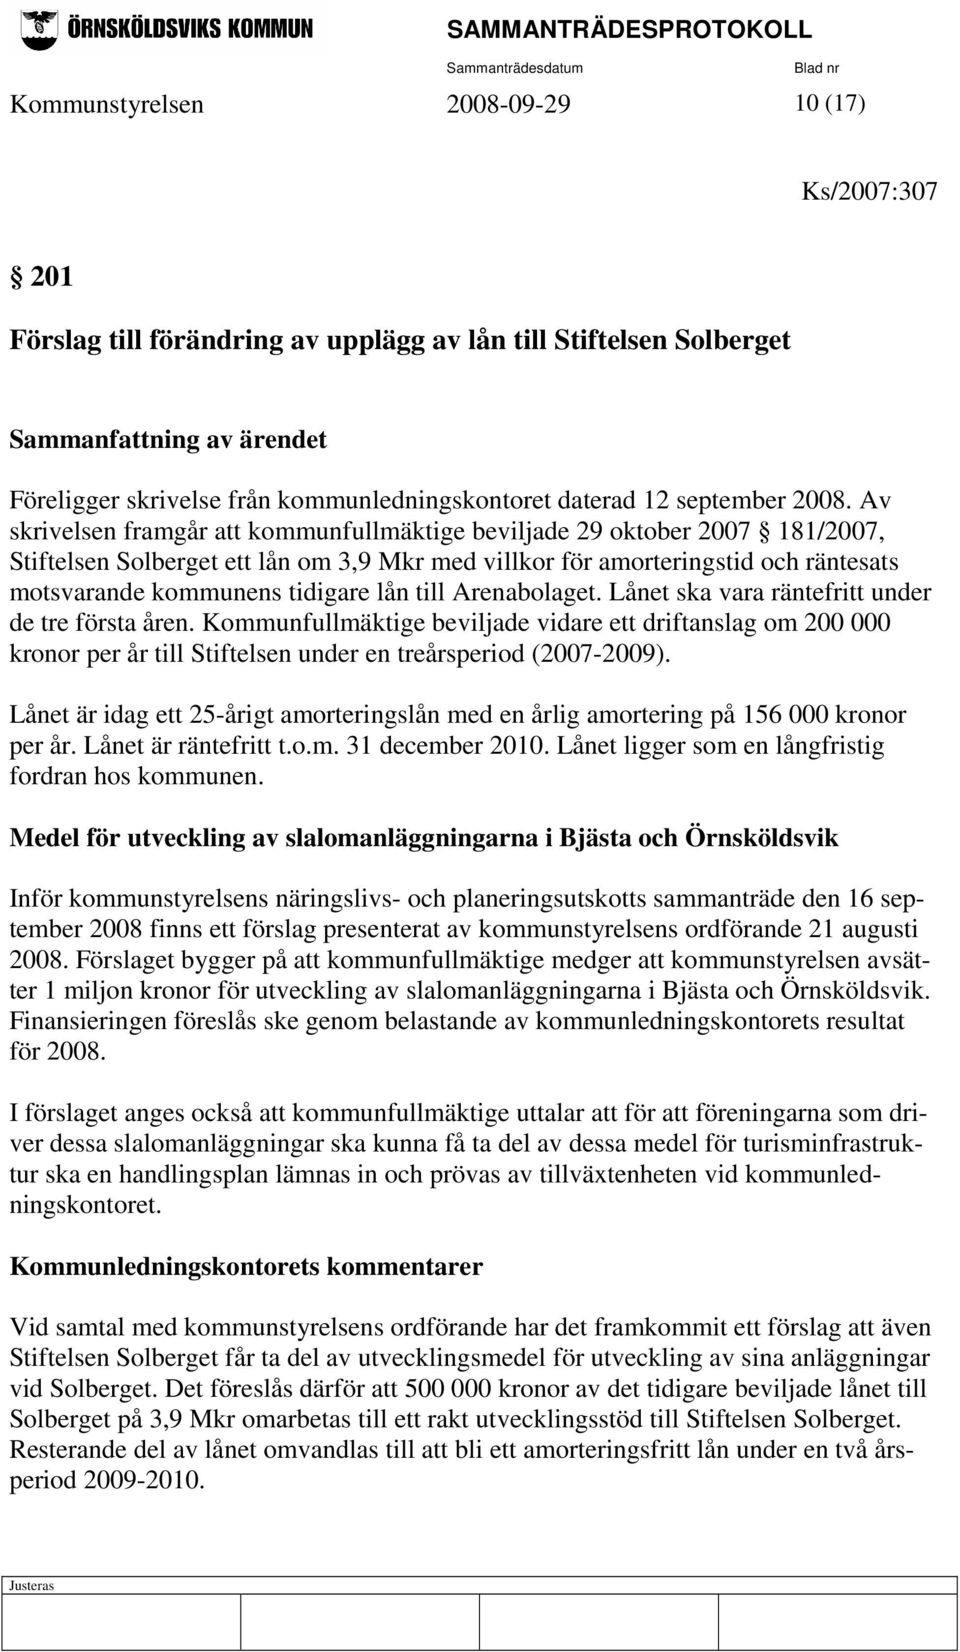 Av skrivelsen framgår att kommunfullmäktige beviljade 29 oktober 2007 181/2007, Stiftelsen Solberget ett lån om 3,9 Mkr med villkor för amorteringstid och räntesats motsvarande kommunens tidigare lån